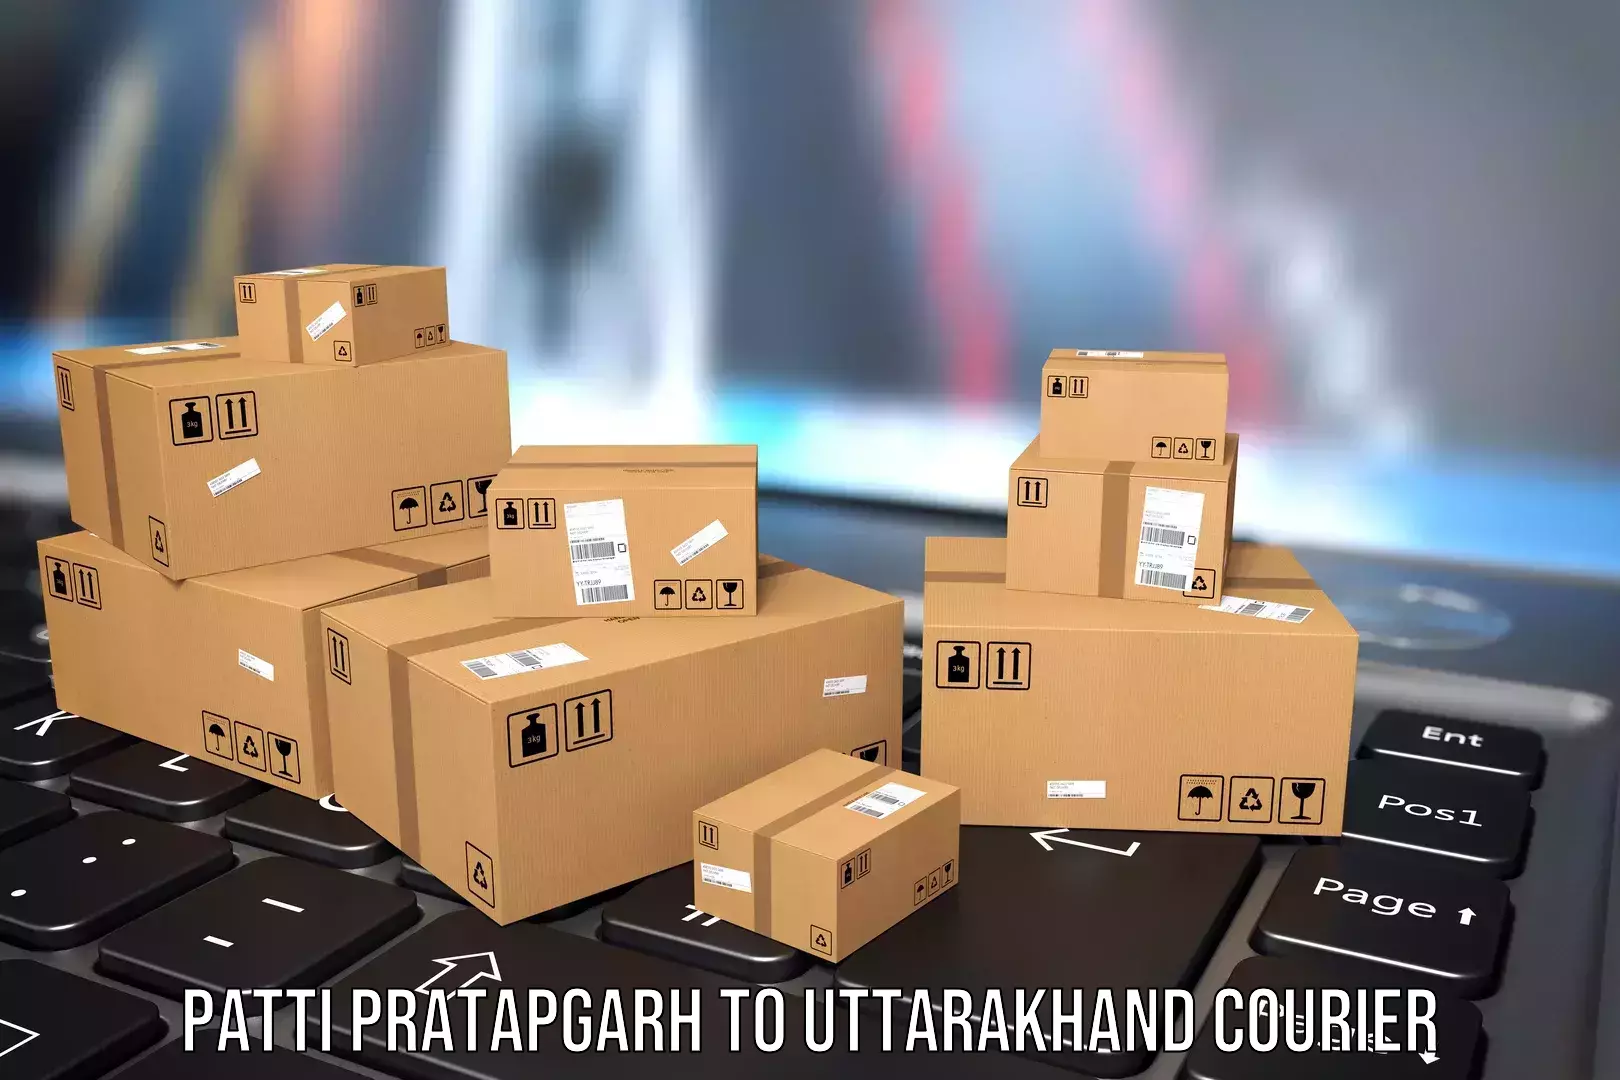 Hassle-free luggage shipping Patti Pratapgarh to Bhimtal